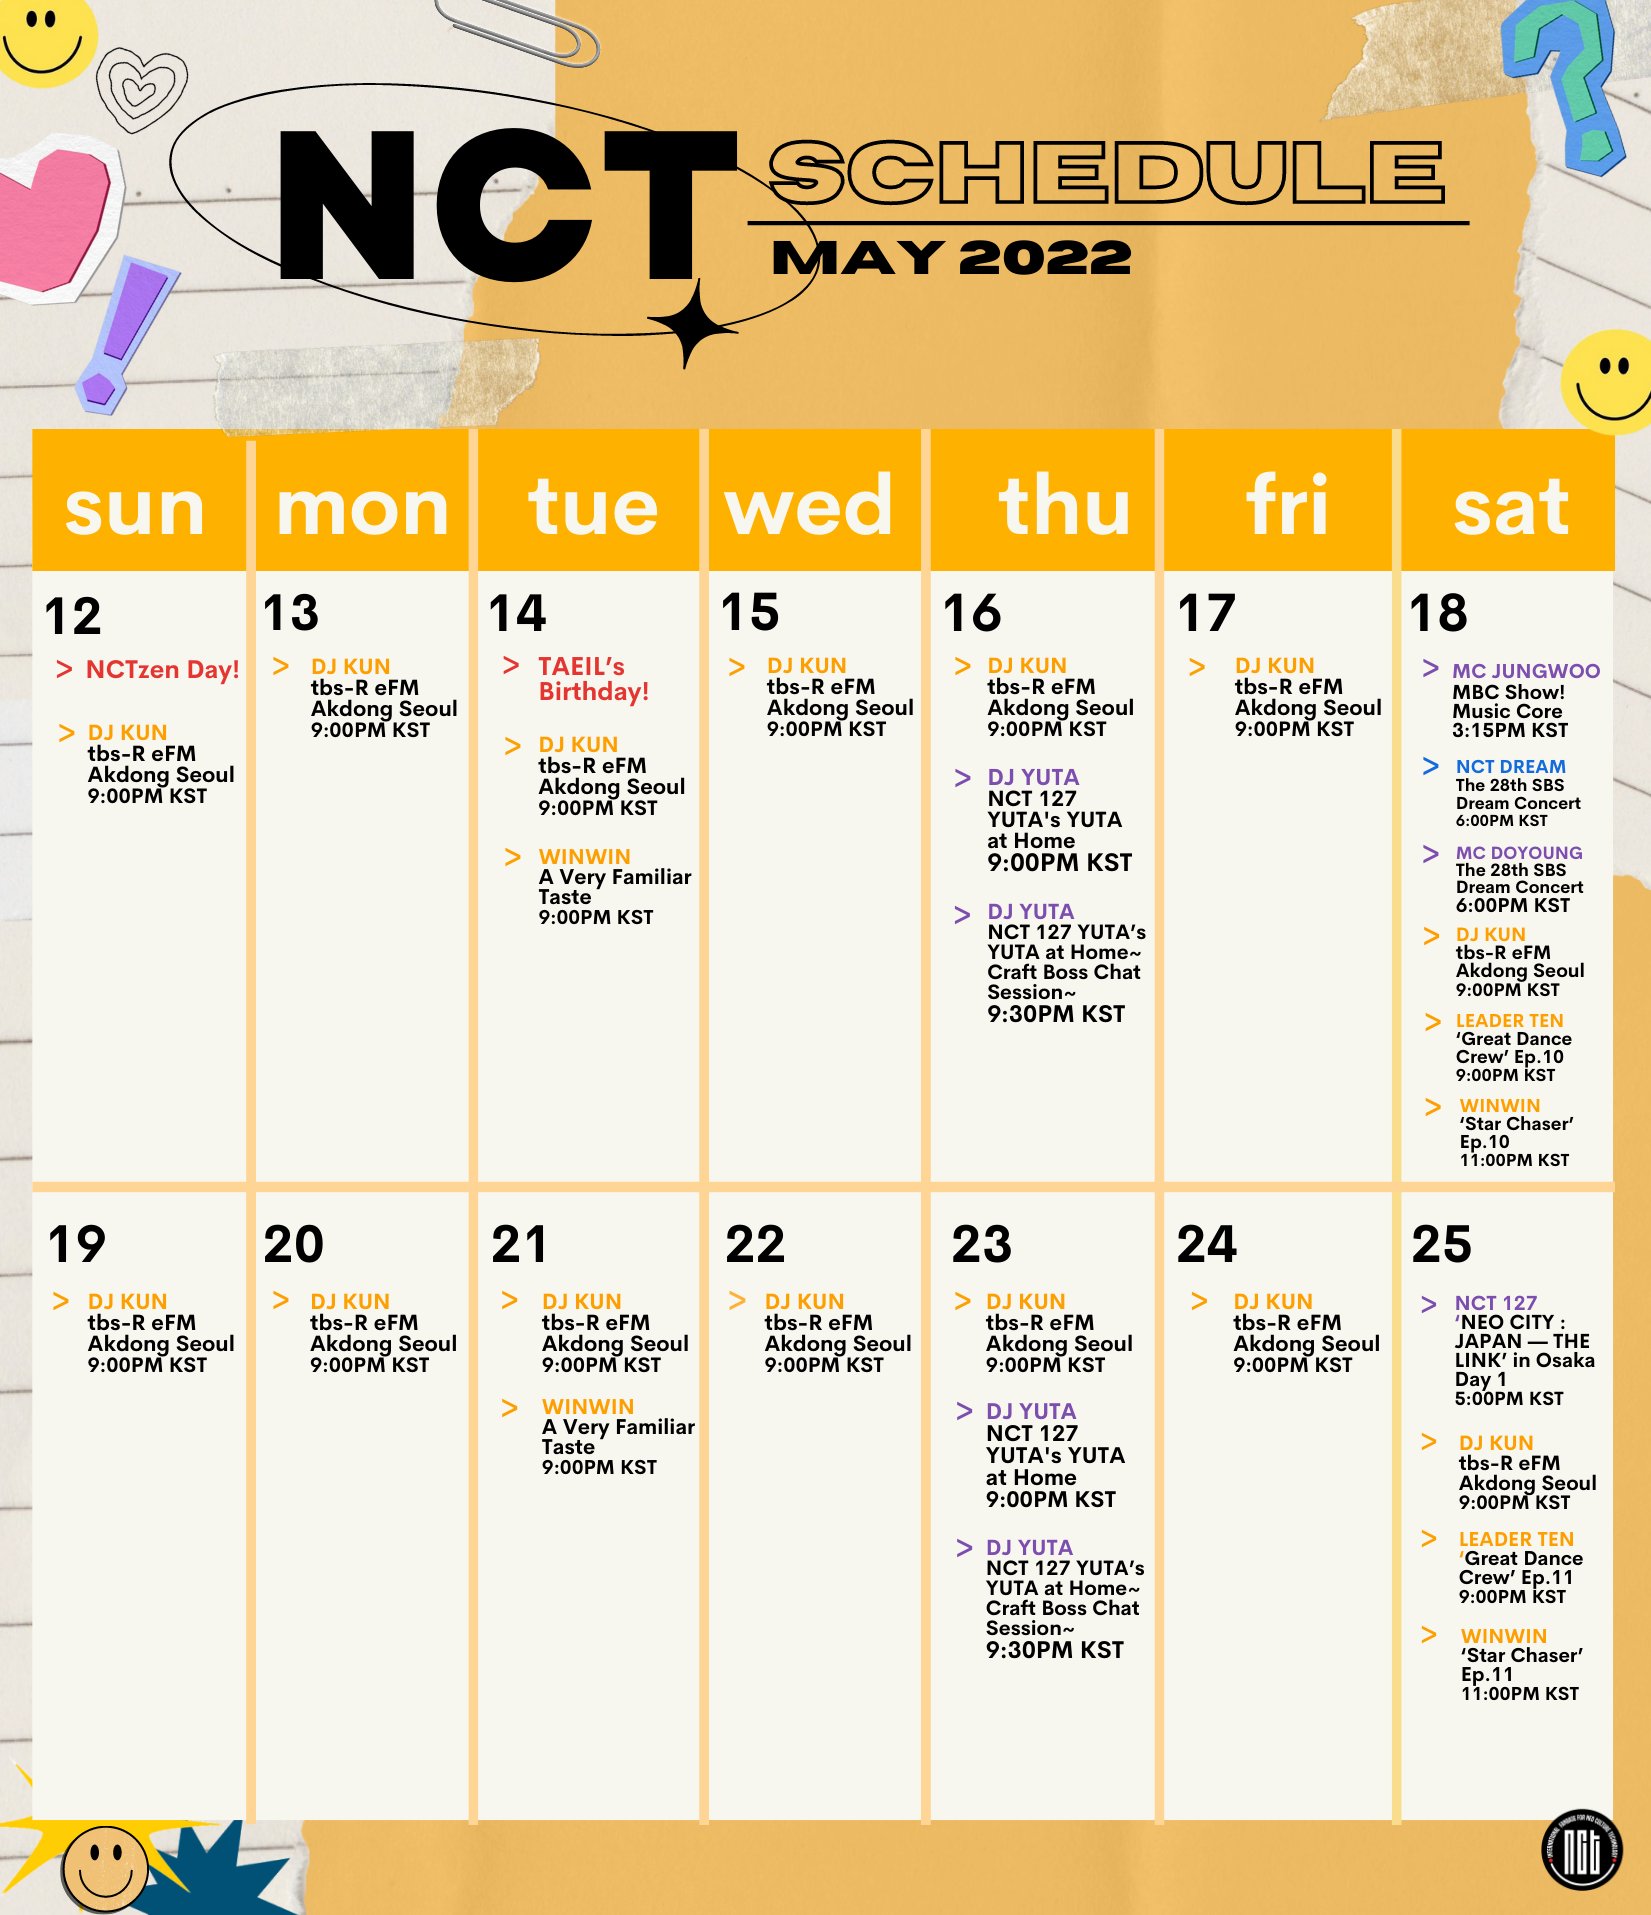 SM_NCT on Twitter "[!!!] NCT SCHEDULE June 18, 2022 🗓 📺 LEADER TEN